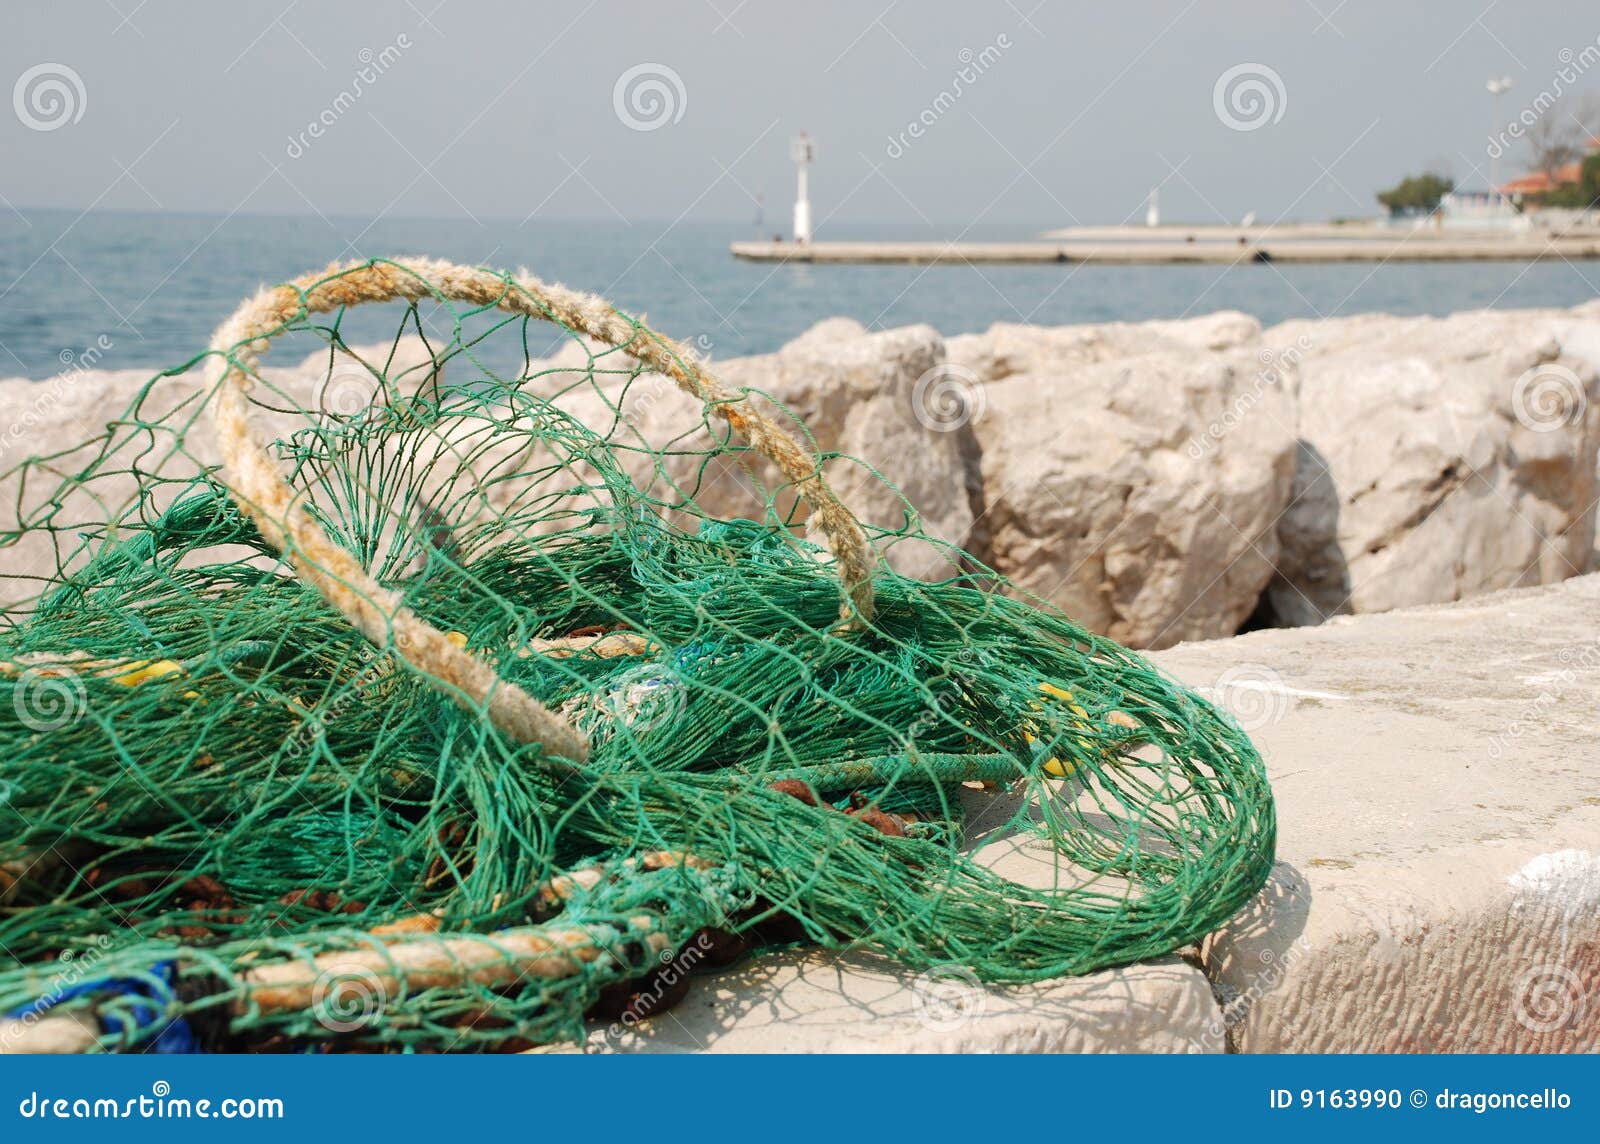 Green Fishing Net stock photo. Image of gear, ocean, sport - 9163990